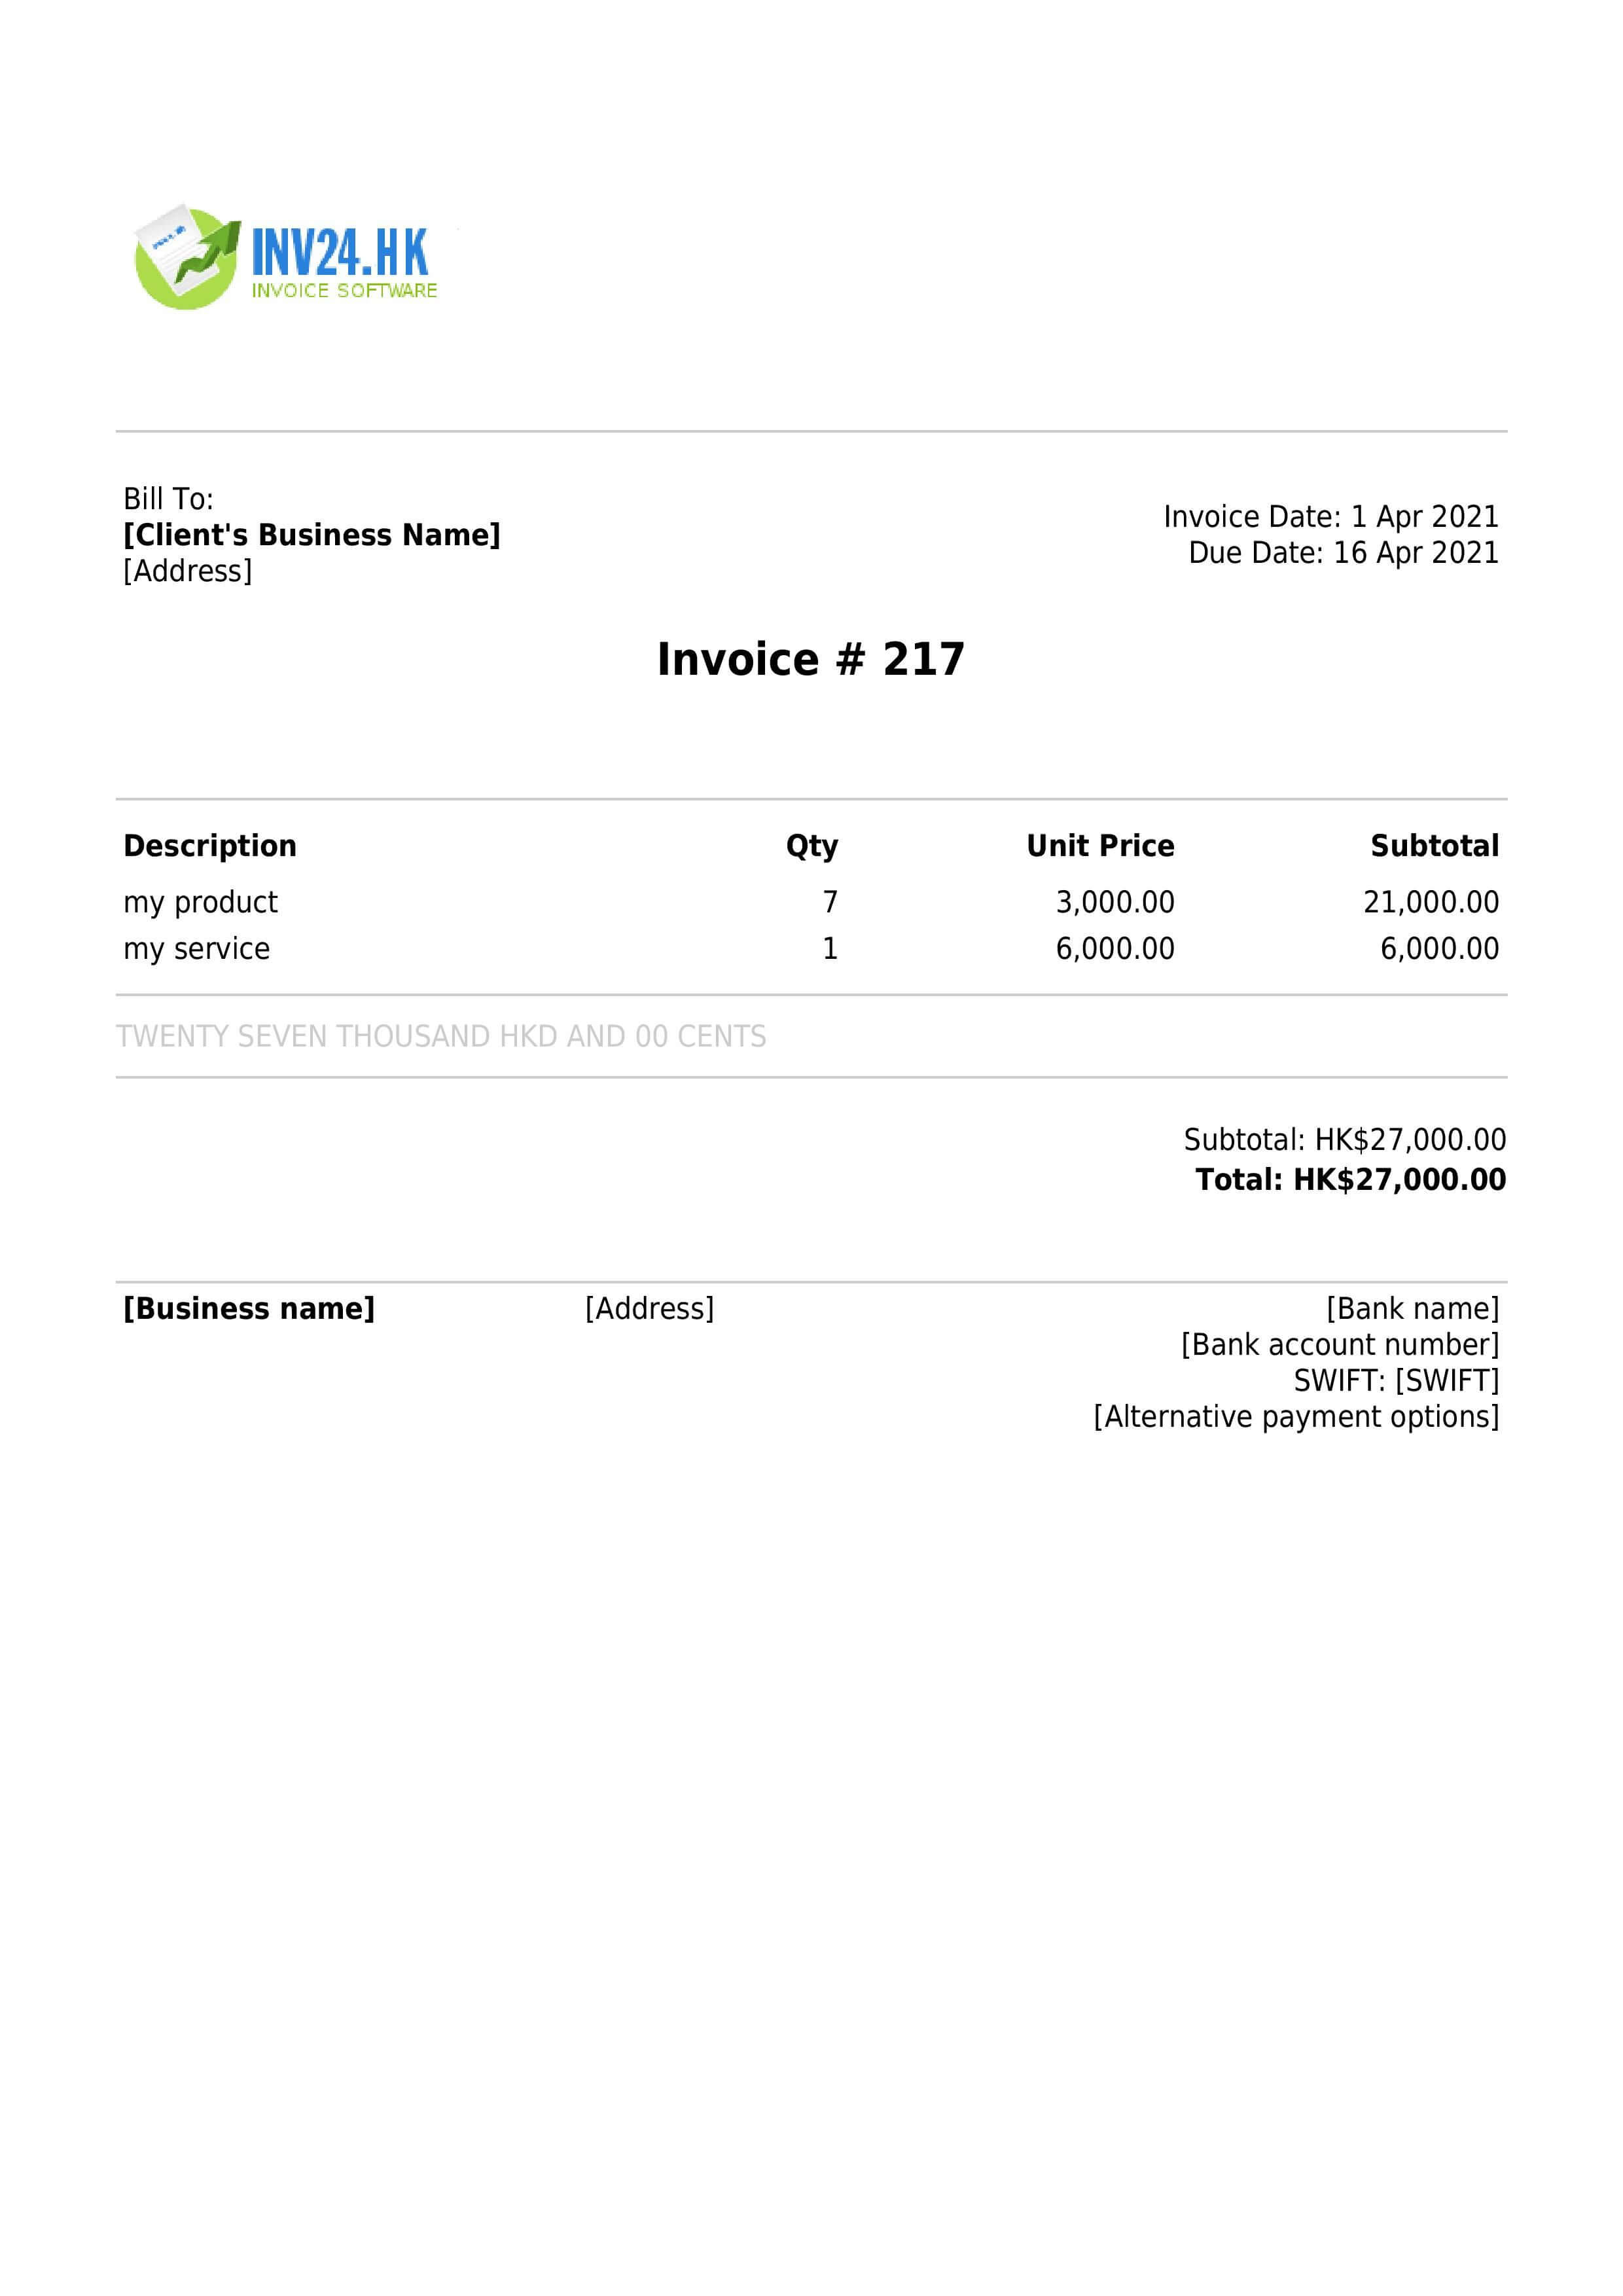 PDF invoice example Hong Kong